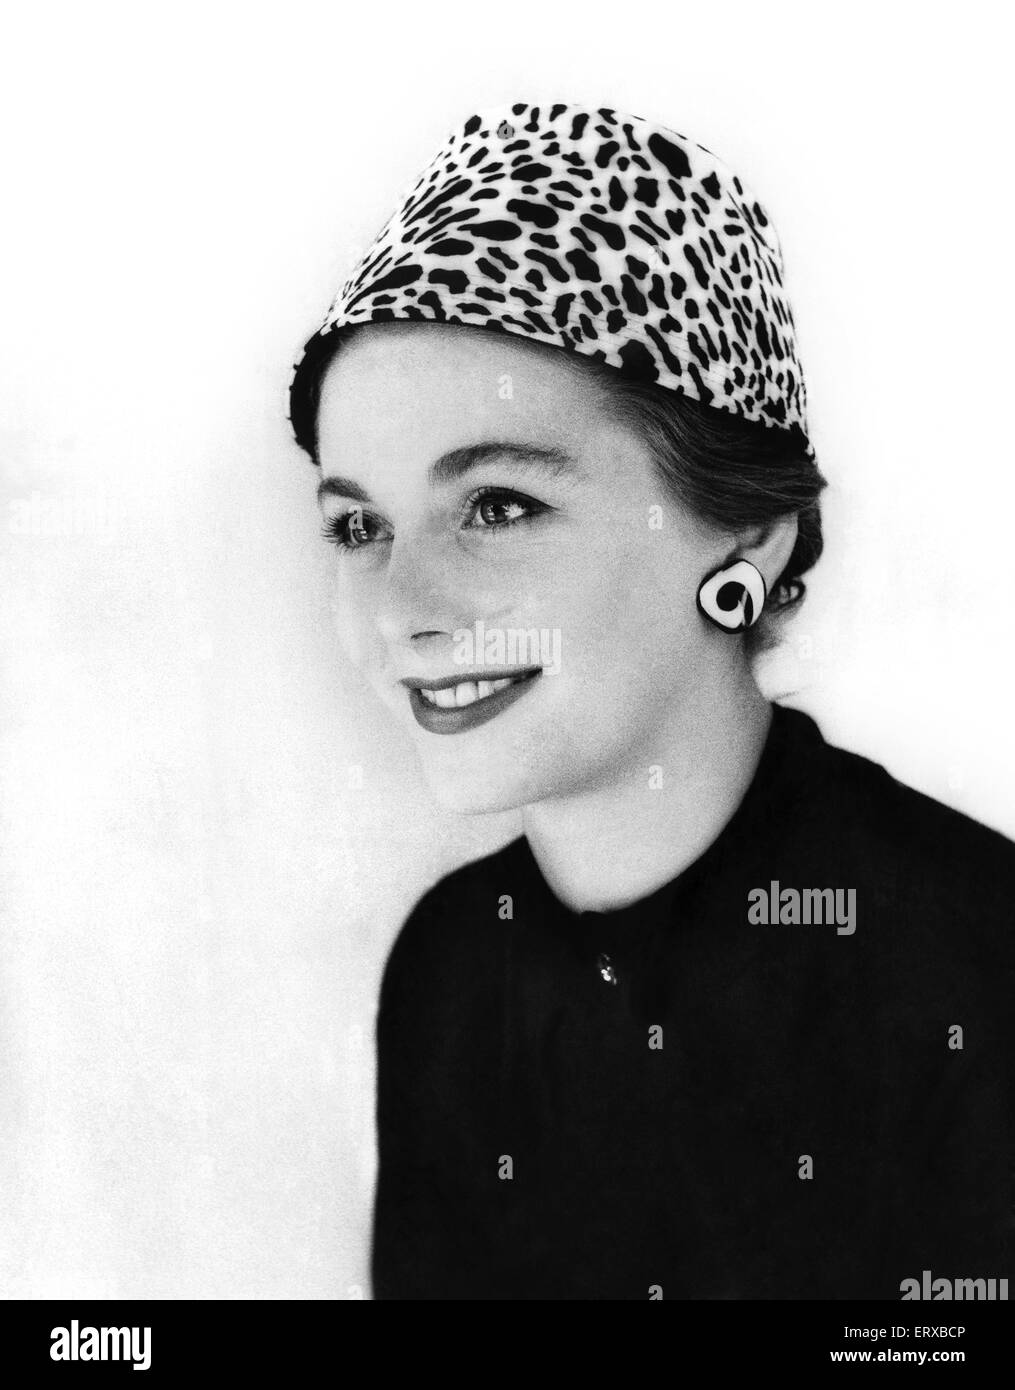 La modélisation d'une femme un animal print hat. 13 Septembre 1955 Banque D'Images